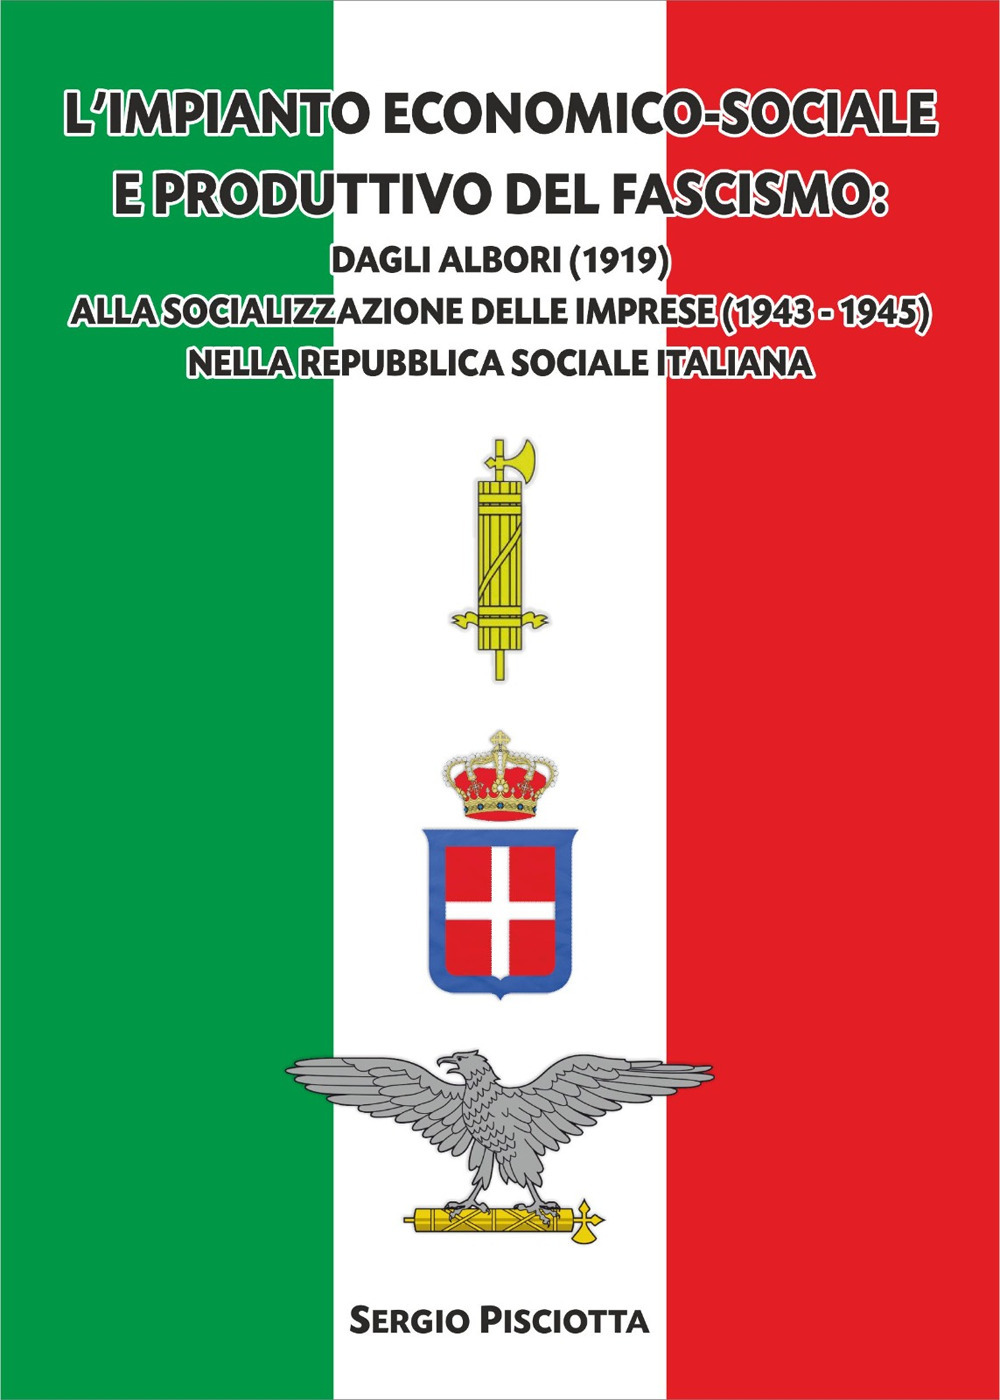 L'impianto economico-sociale e produttivo del Fascismo. Dagli albori (1919) alla socializzazione delle imprese (1943-1945) nella Repubblica Sociale Italiana